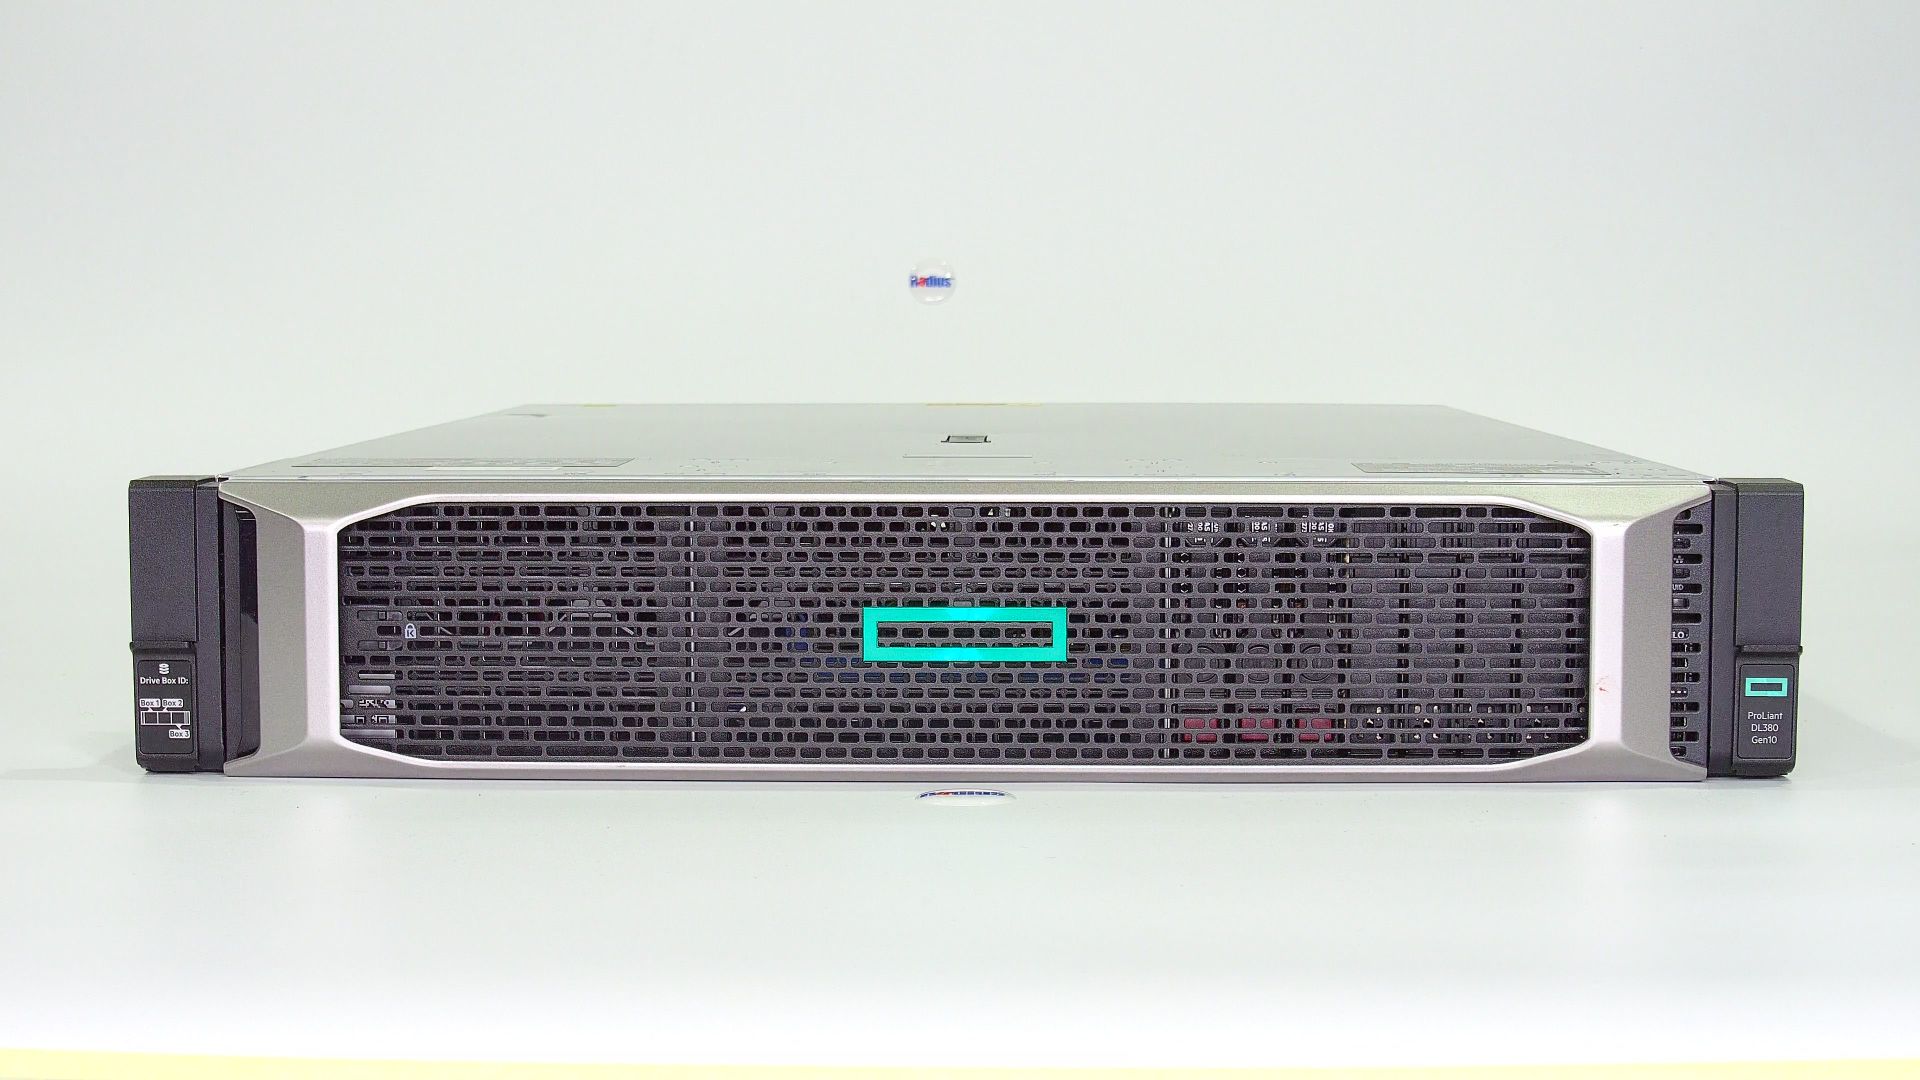 HPE Proliant DL380 Gen10 Server